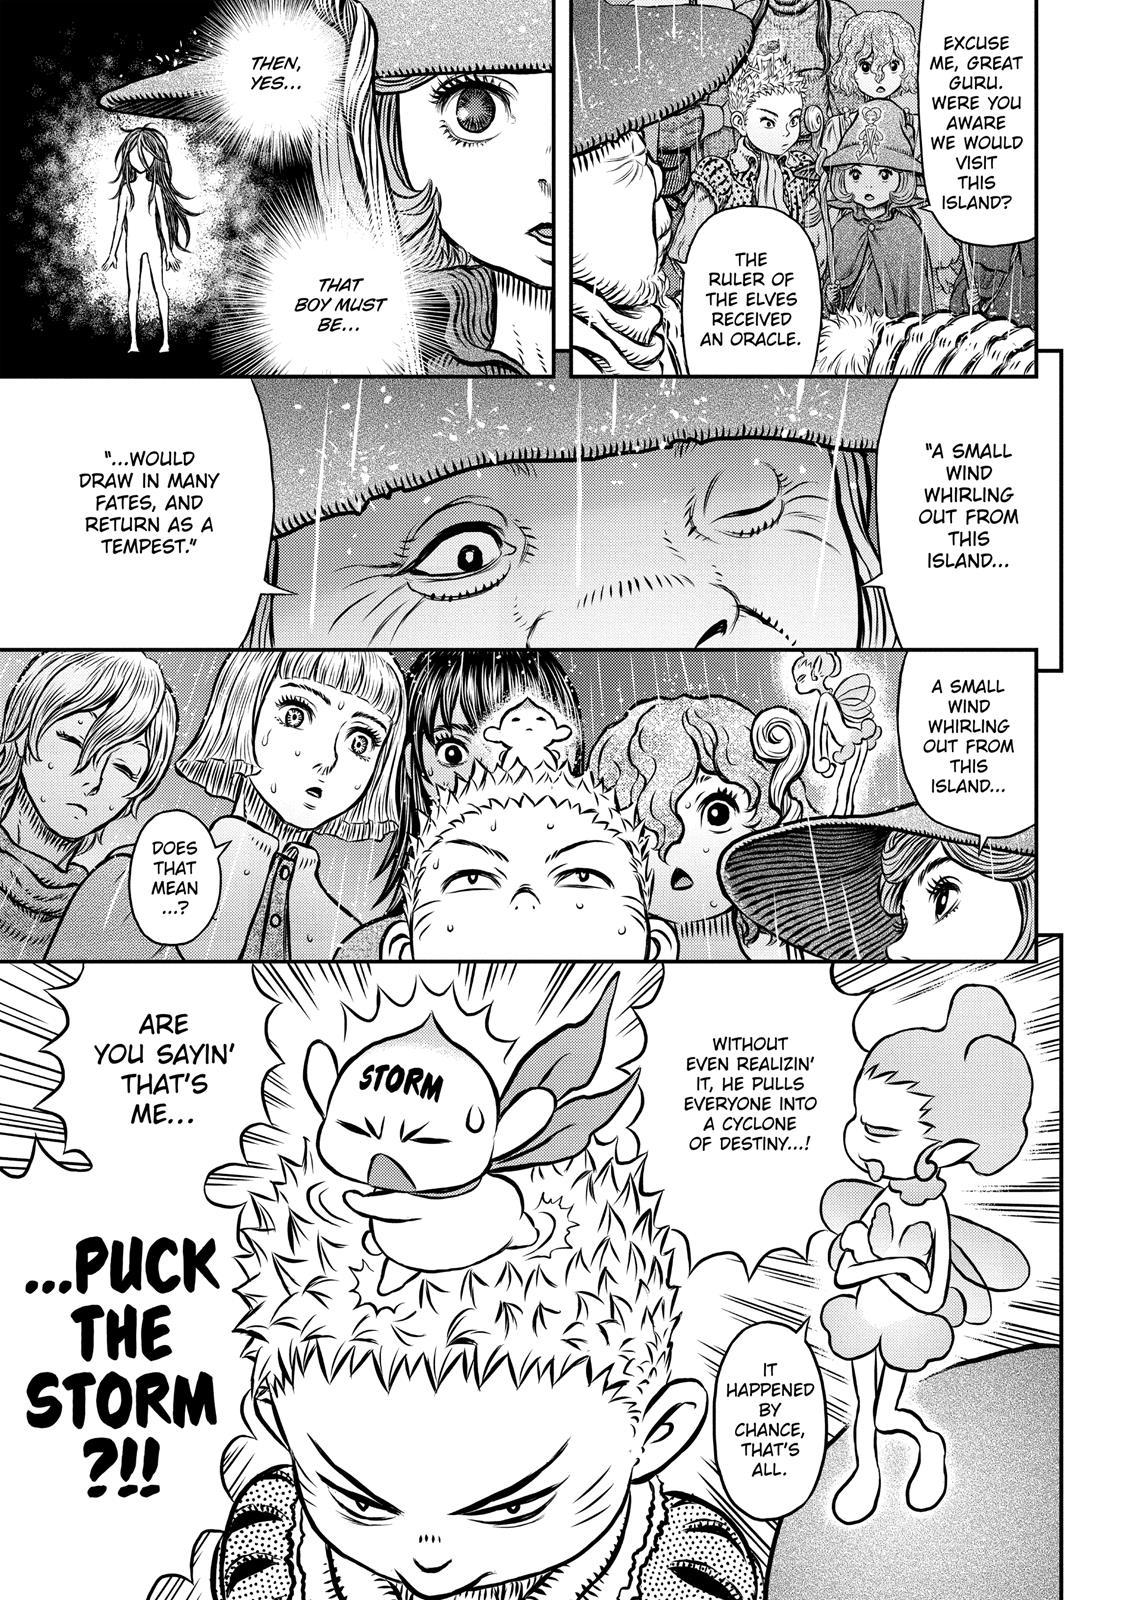 Berserk Manga Chapter 344 image 08